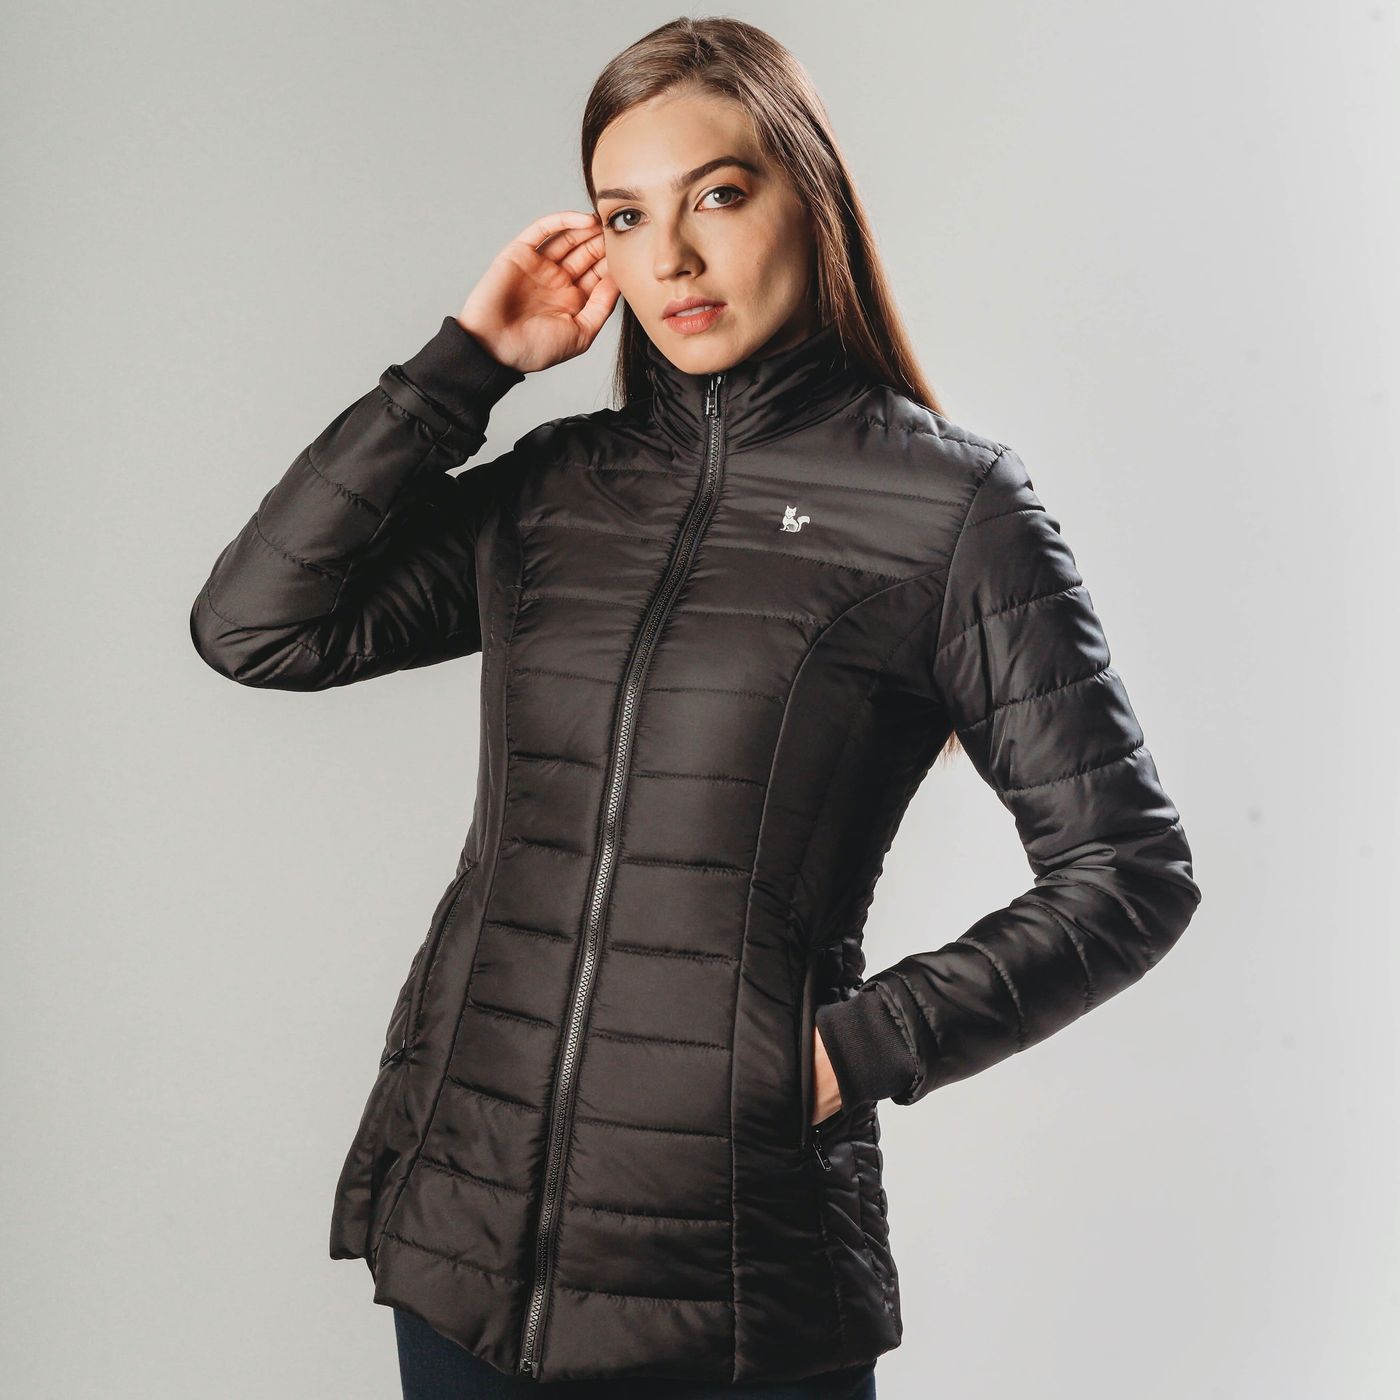 casaco termico feminino para neve